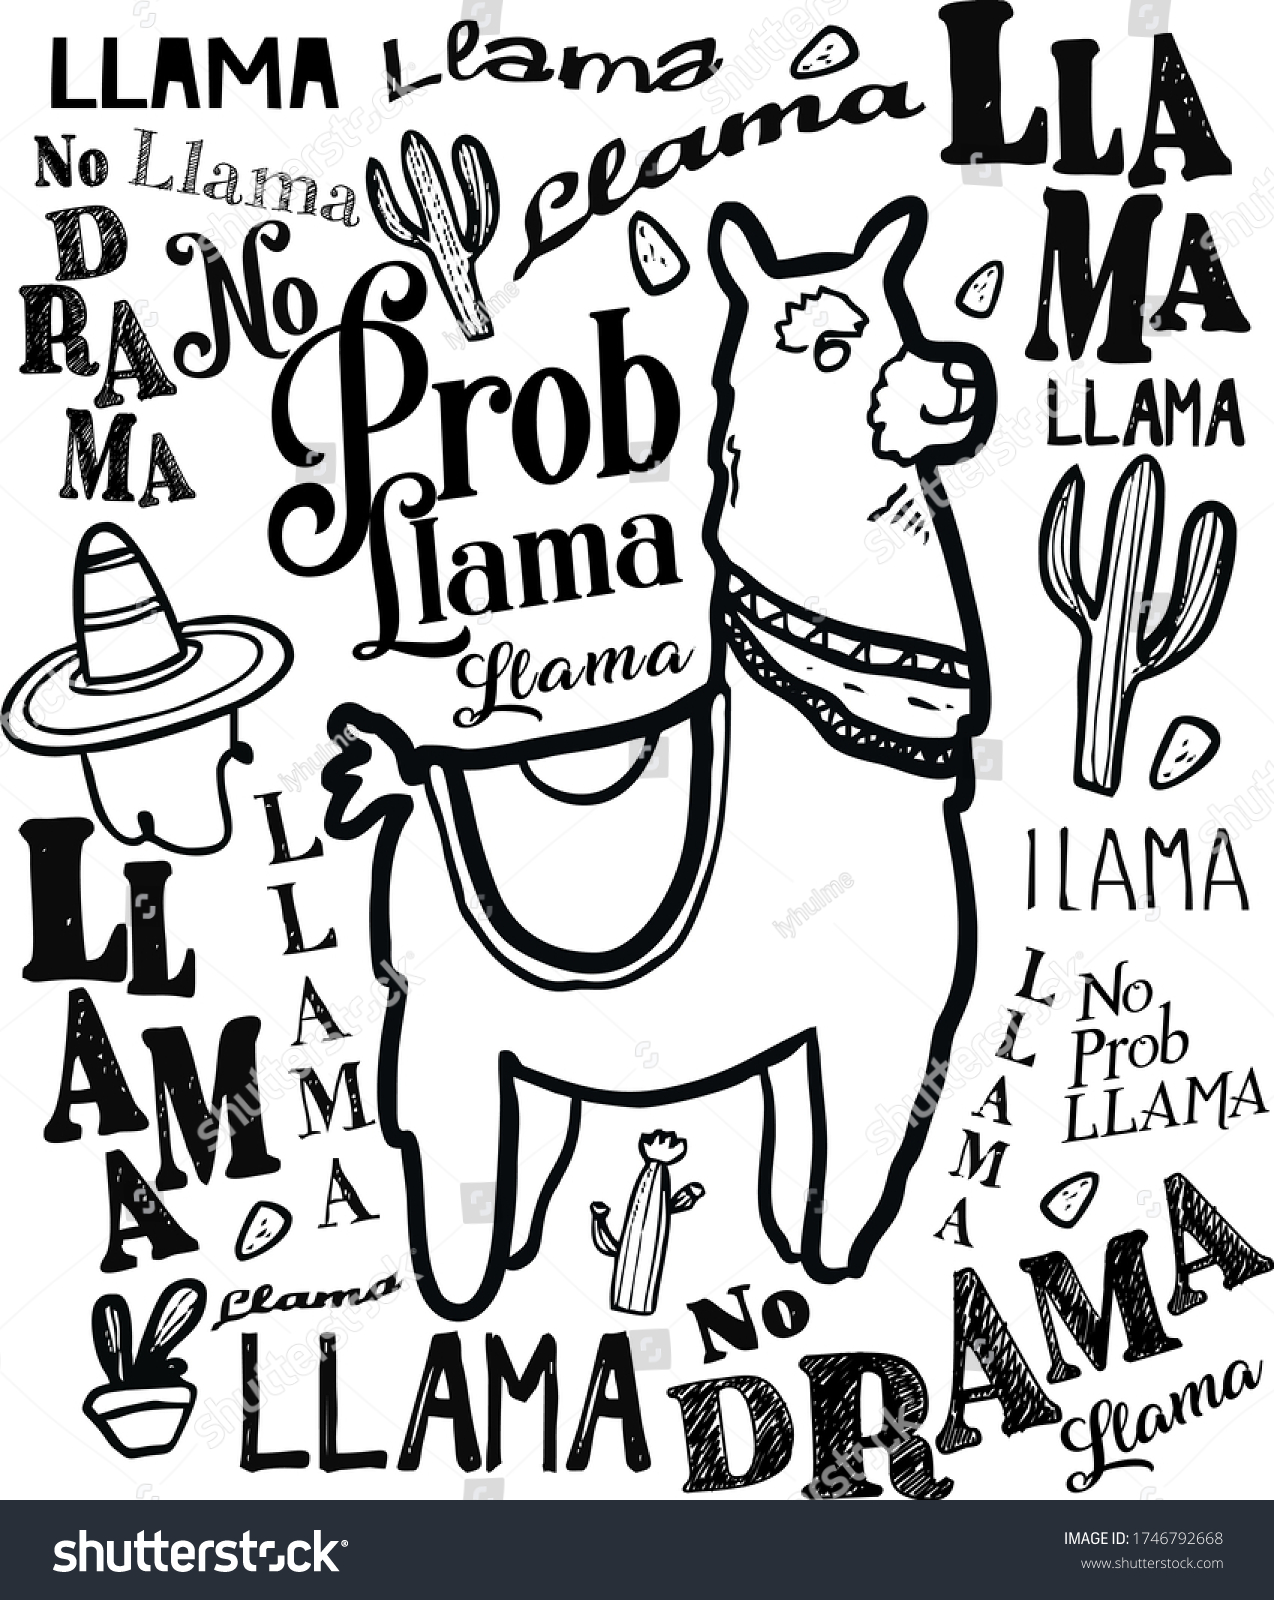 SVG of llama, prob llama, no prob llama, animal,pet animal, no drama, llama no drama, Black and white svg